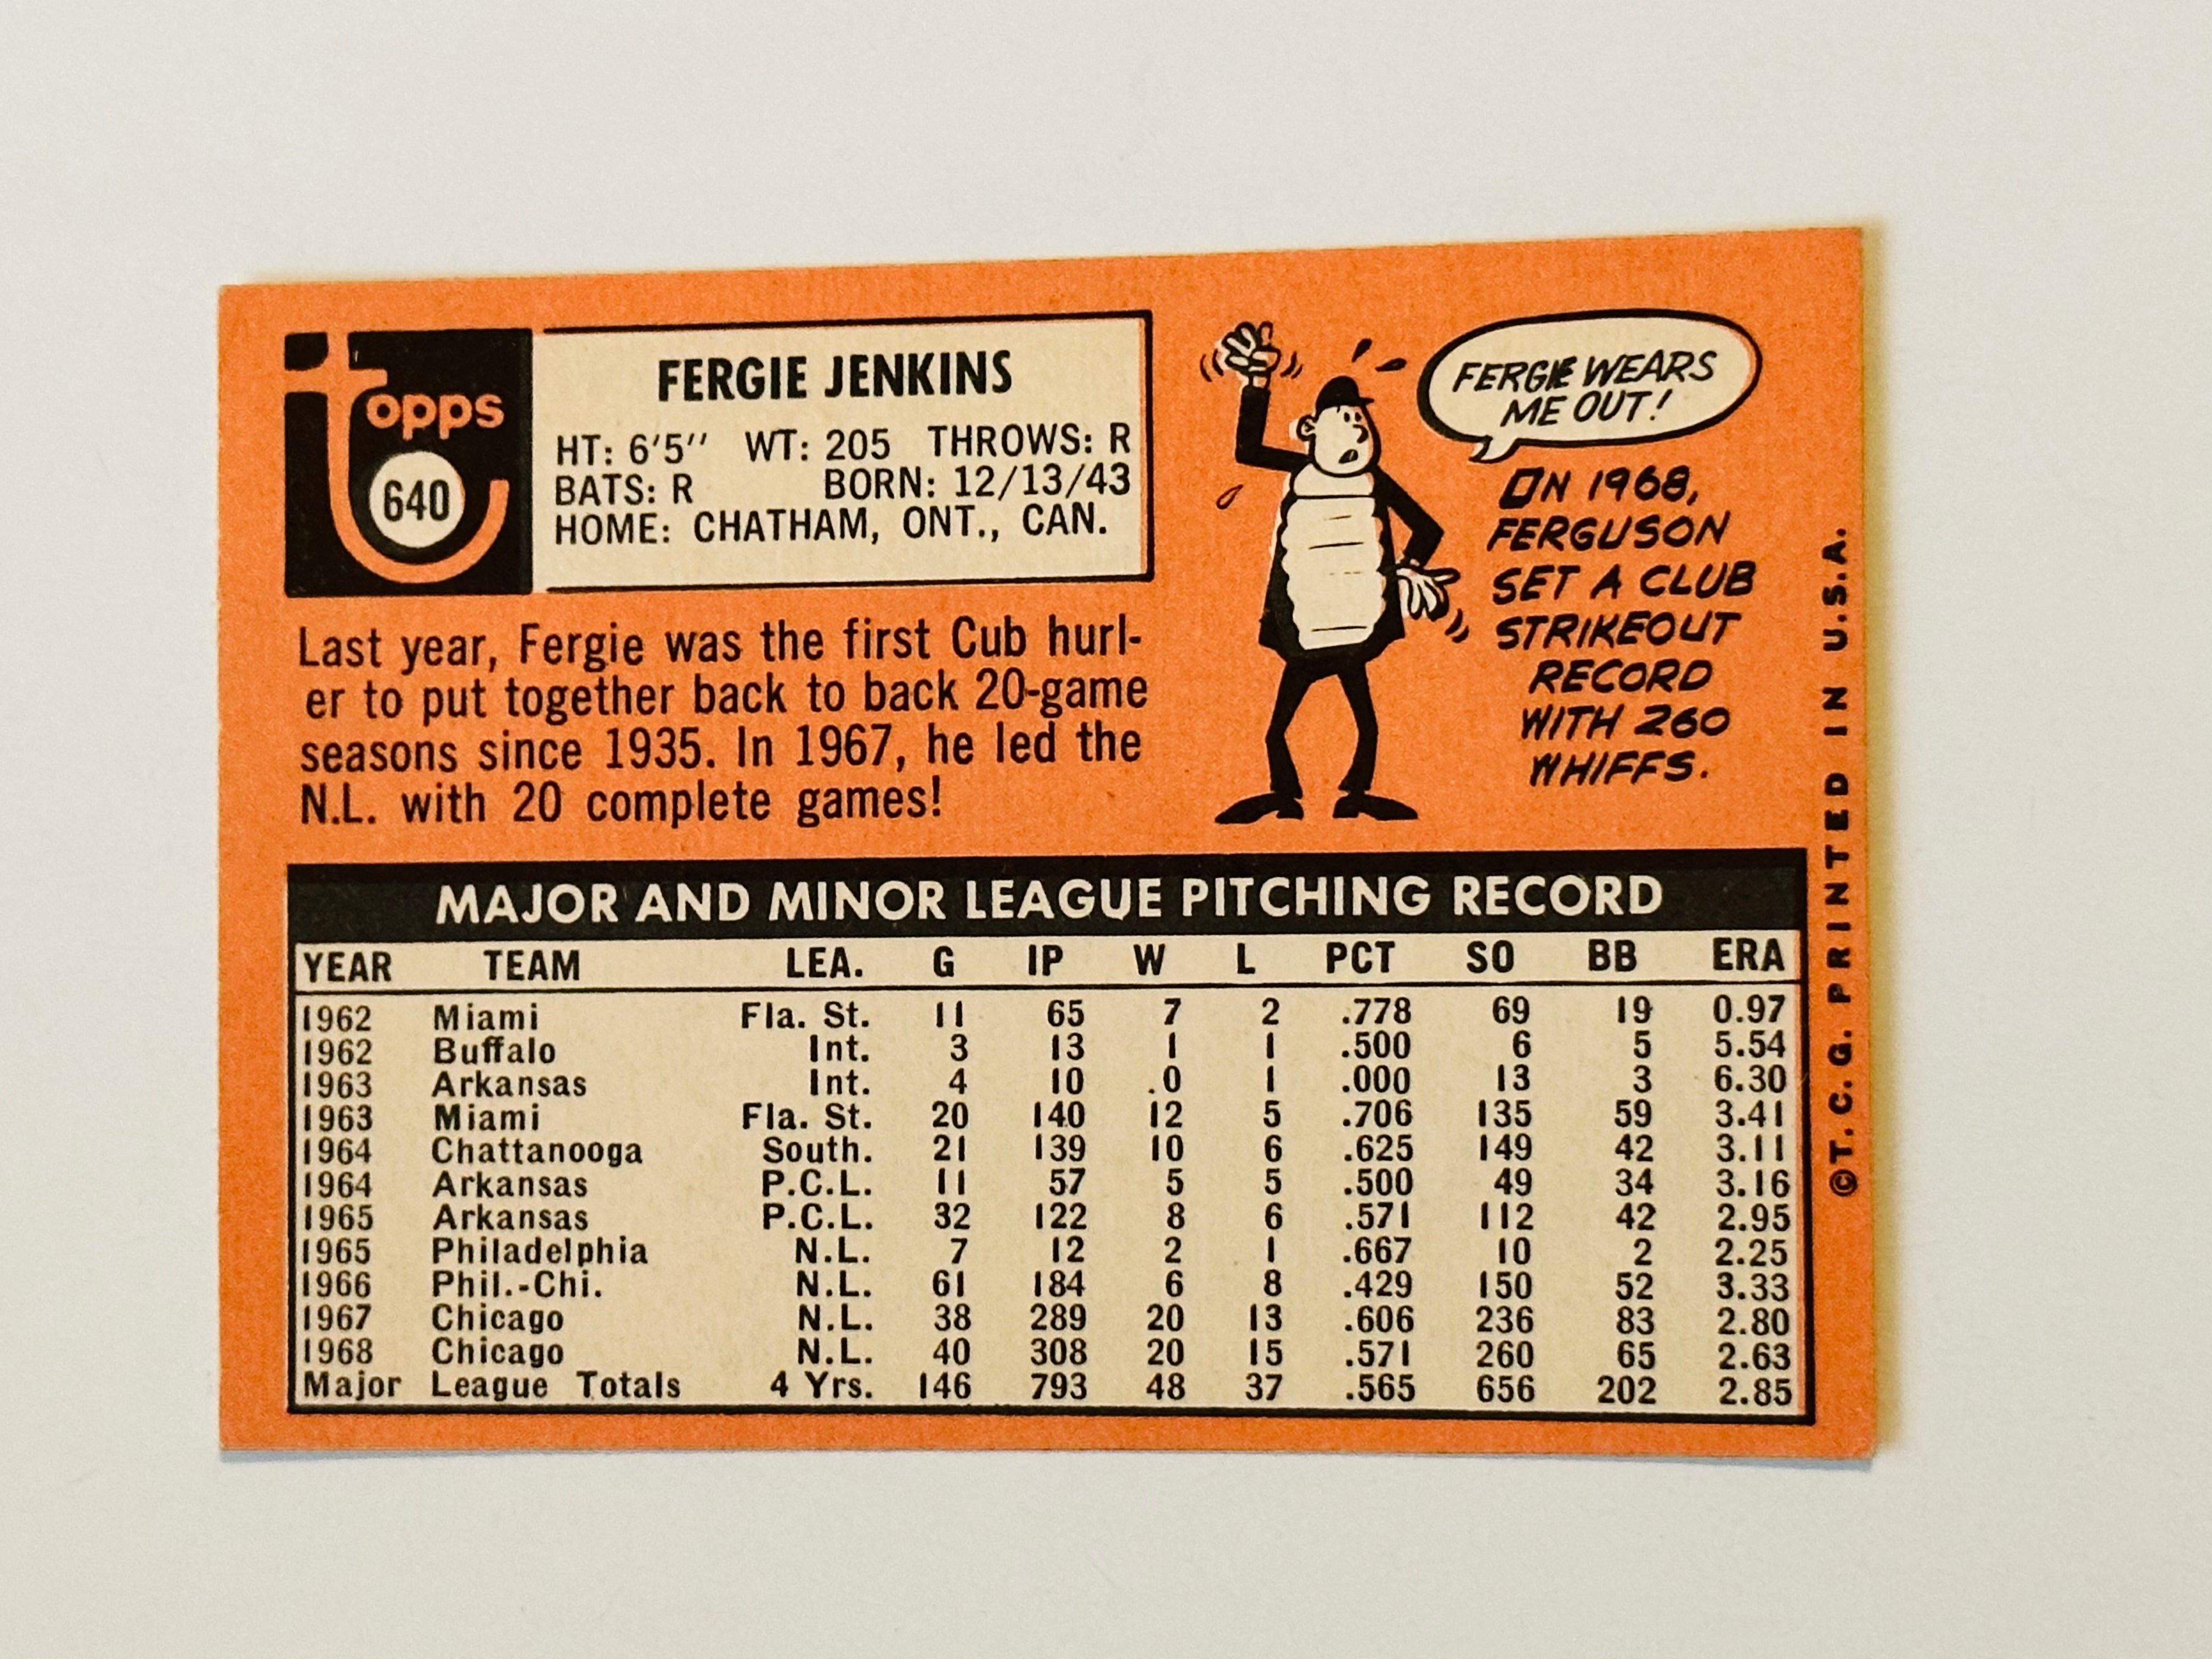 1969 Topps Fergie Jenkins high grade baseball card